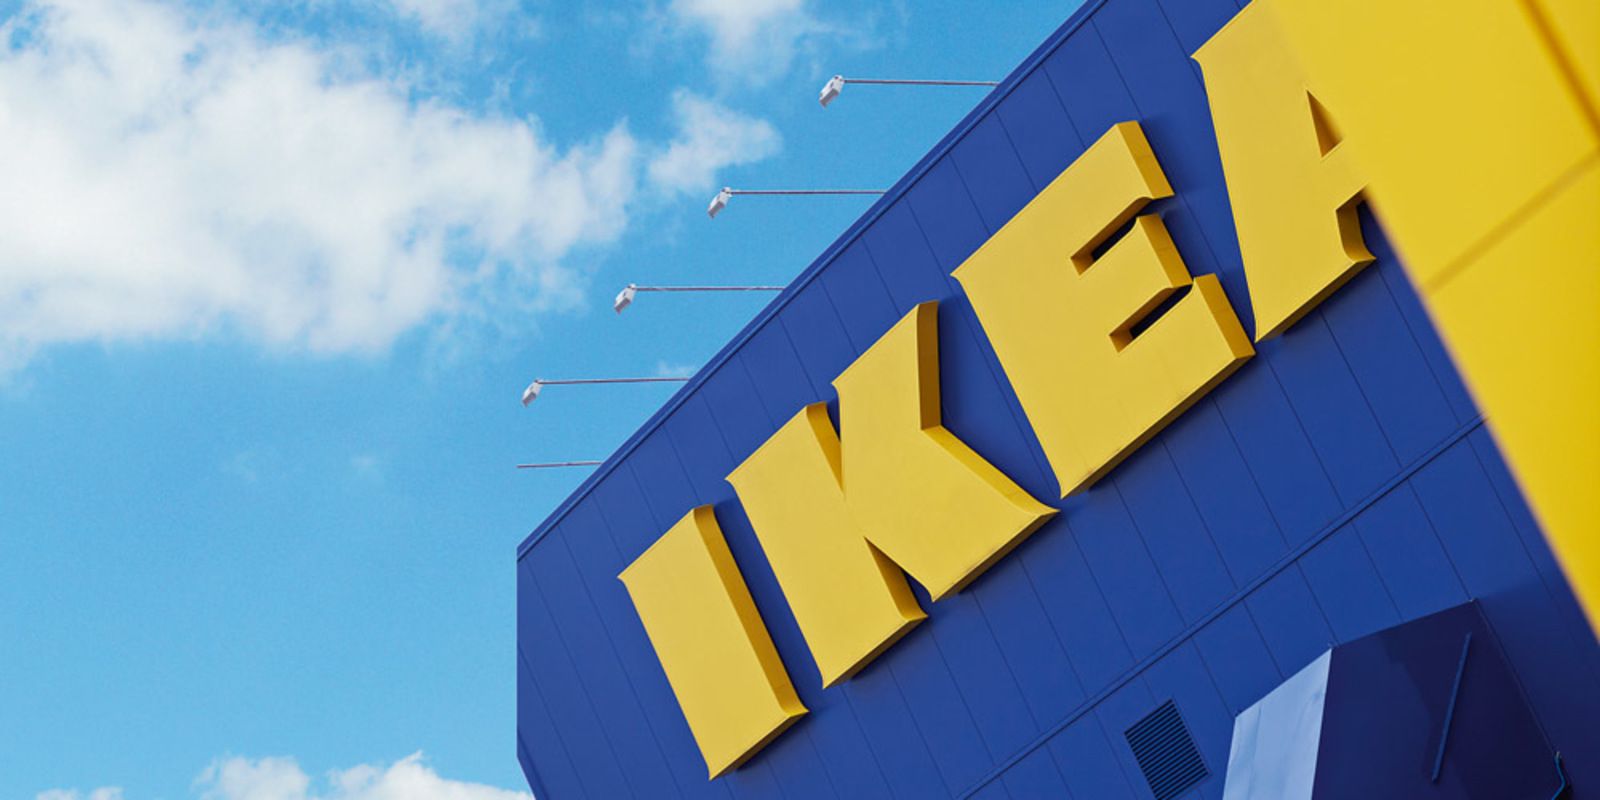 droogte Goed doen radar Het IKEA namensysteem ontrafeld